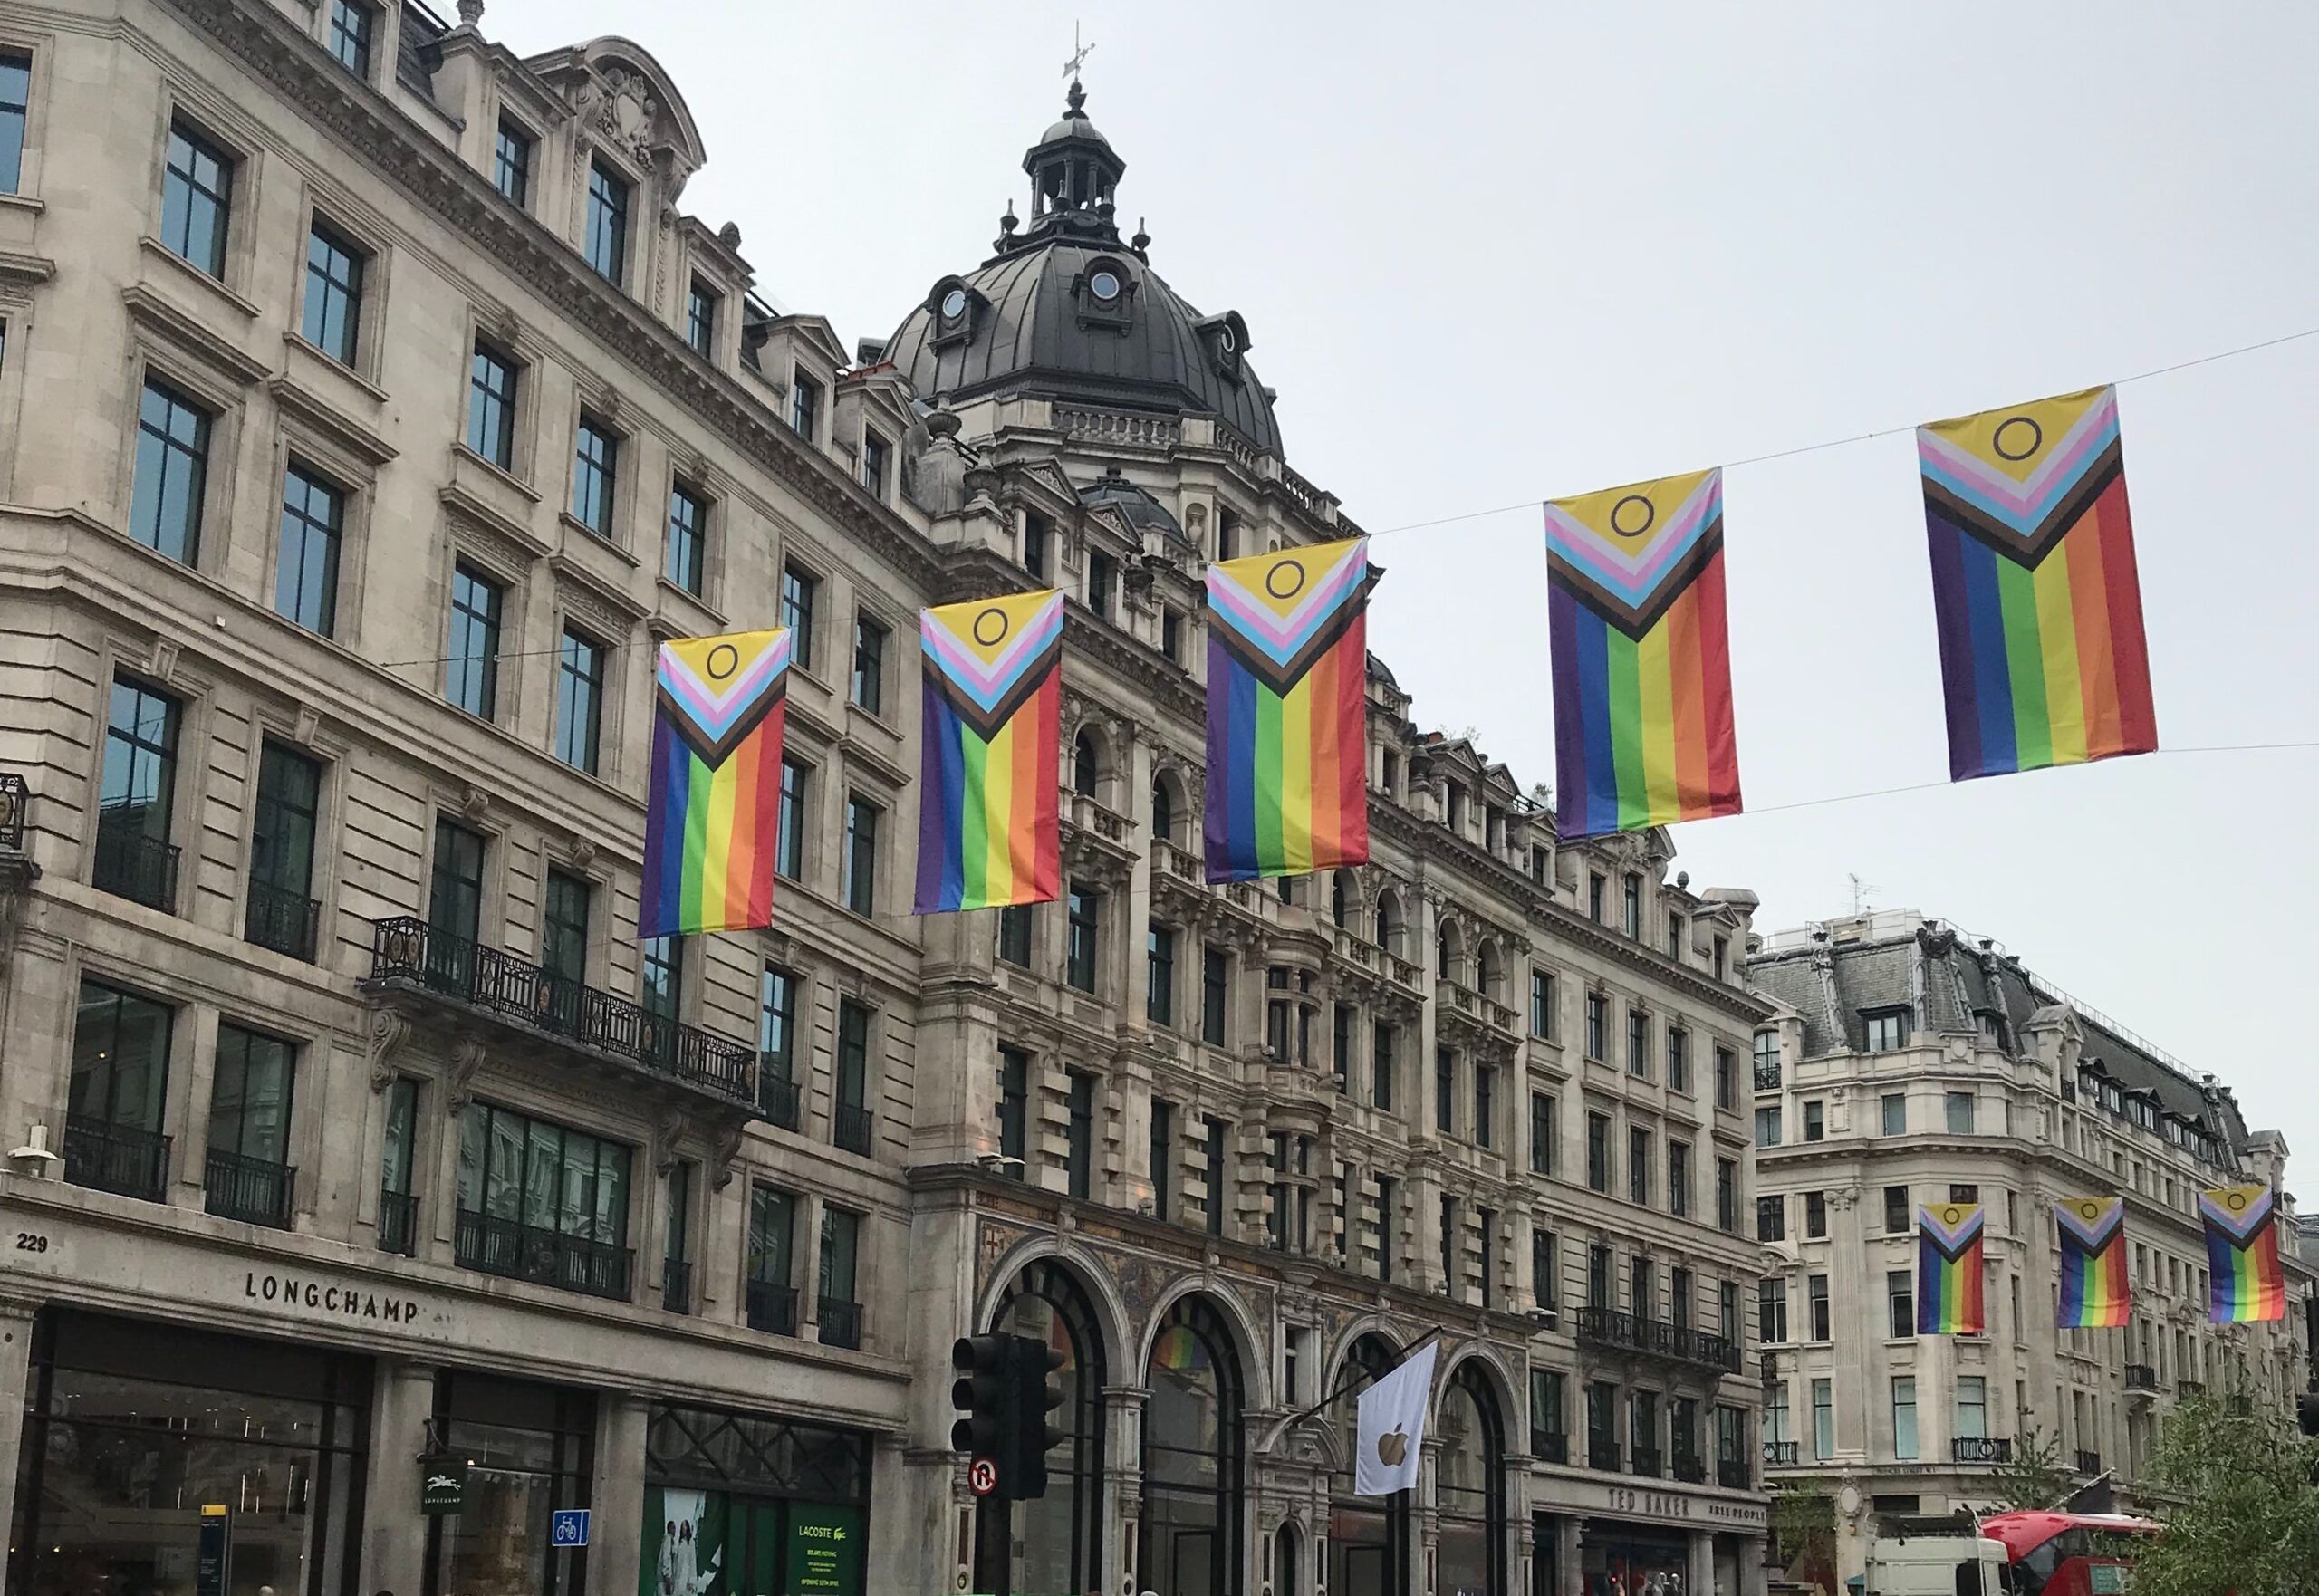 Intersex-inclusive Progress Pride flags flying over London's Regent Street.